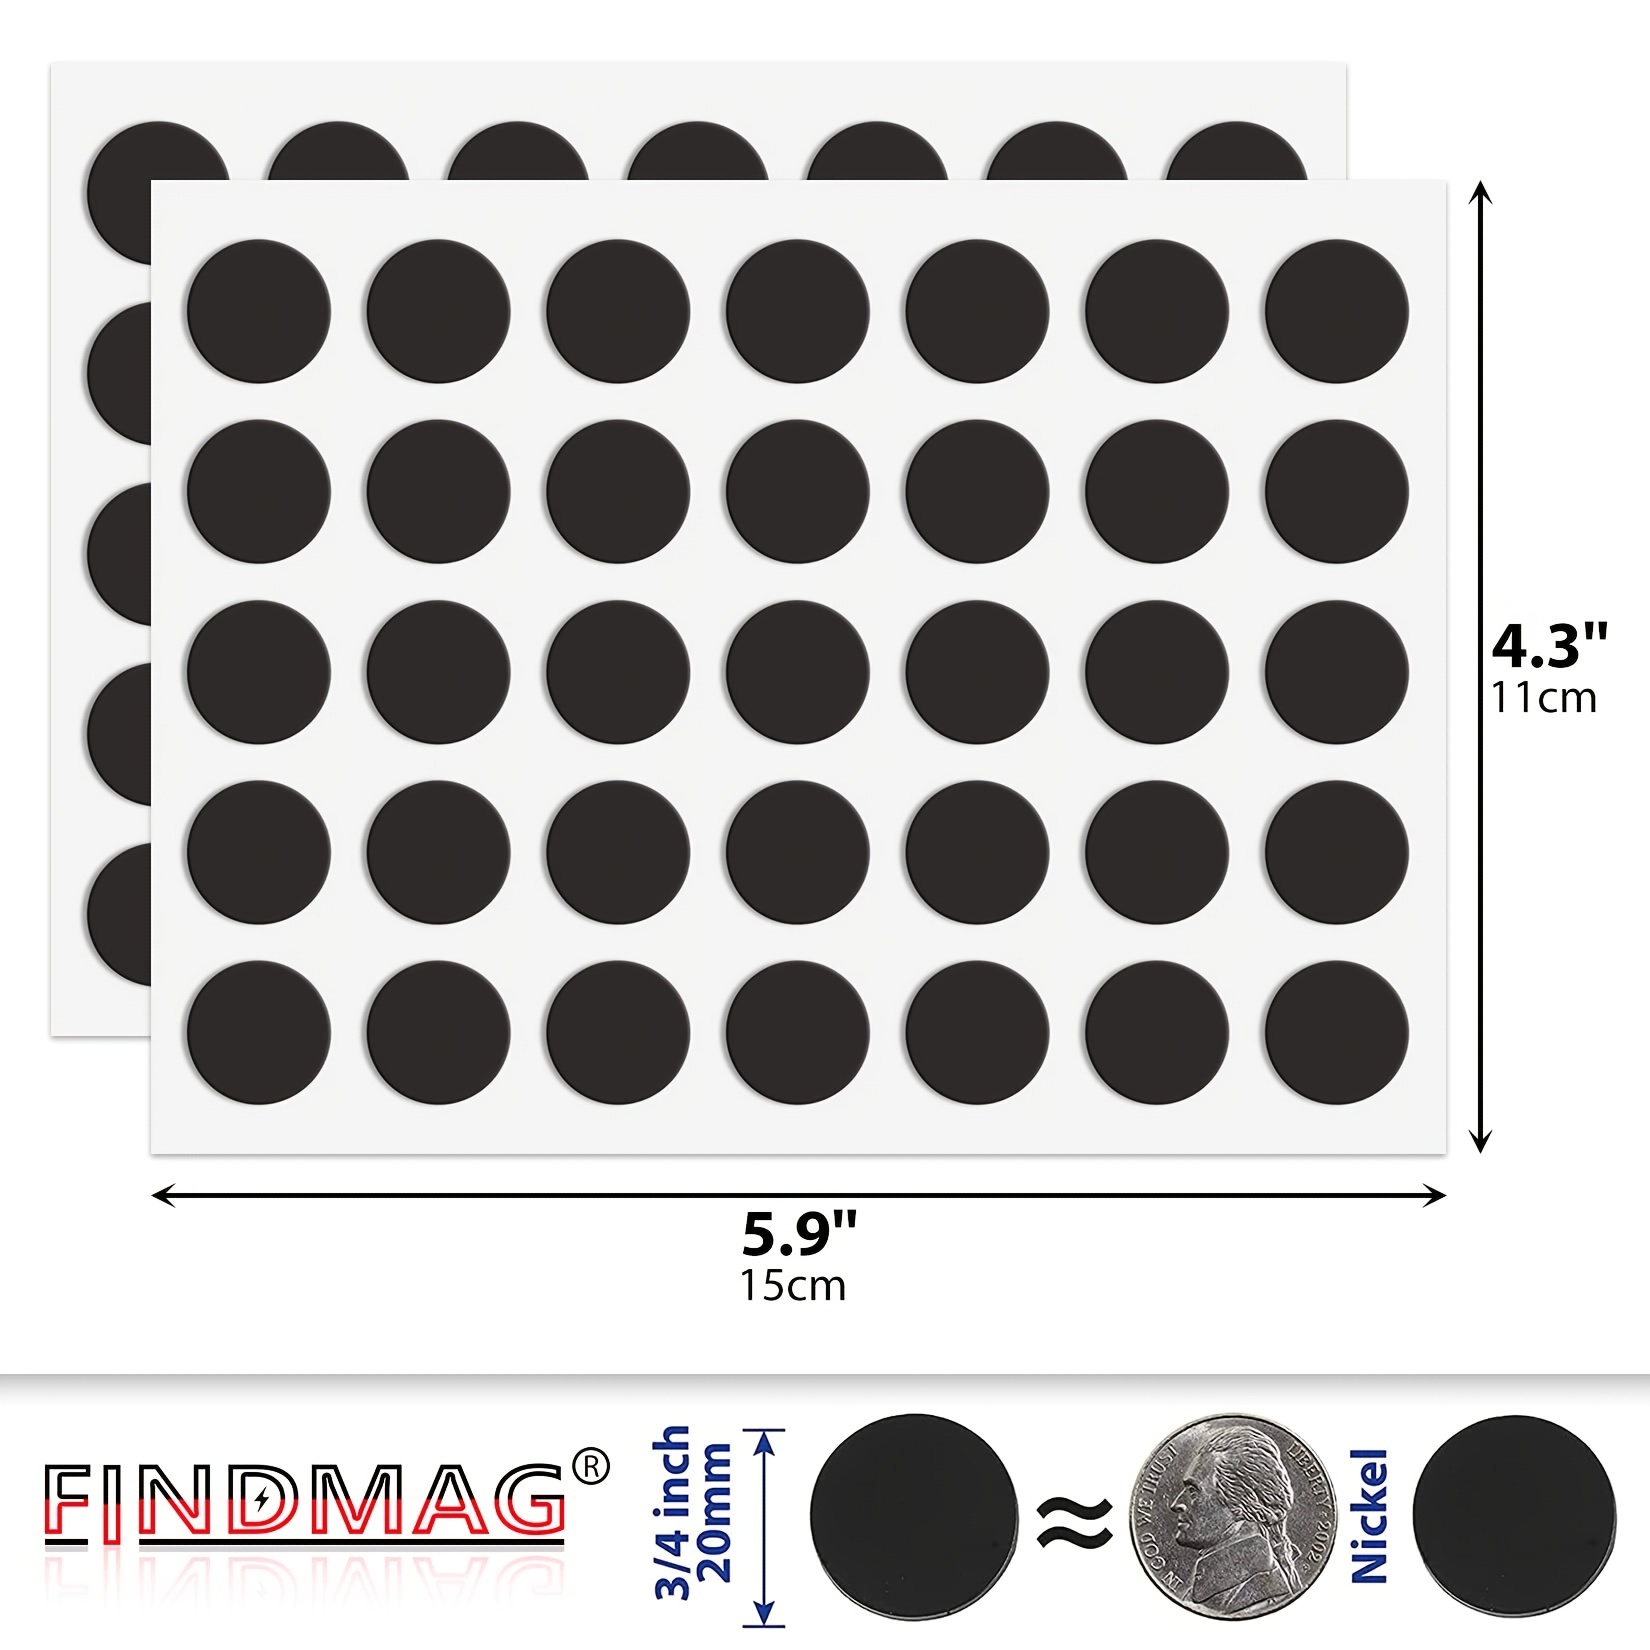 Imanes redondos con respaldo adhesivo – 100 imanes autoadhesivos flexibles  para manualidades, pequeños puntos magnéticos adhesivos, círculos imanes